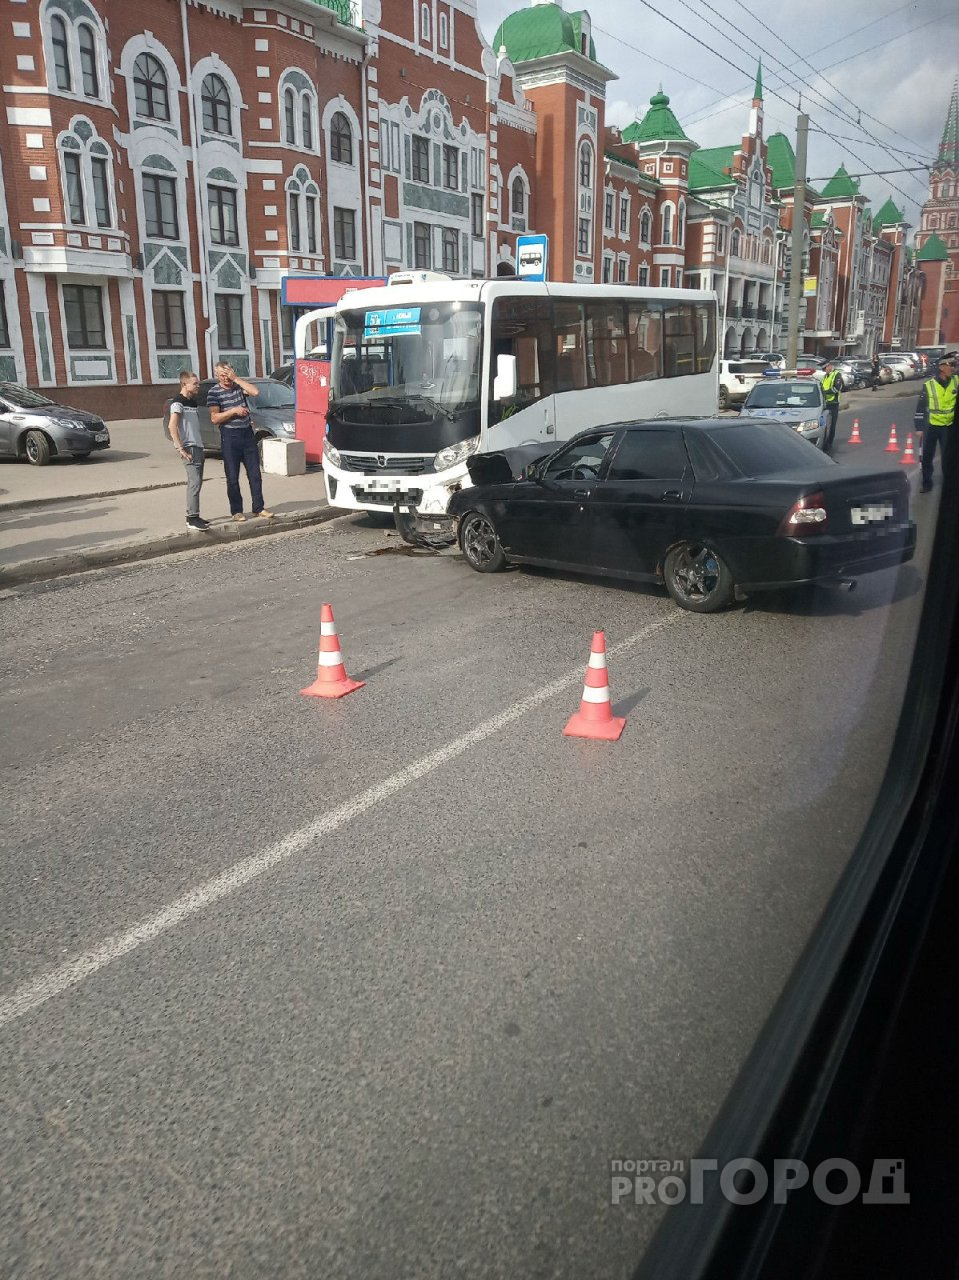 Легковушка и автобус столкнулись лбами на улице в Йошкар-Оле